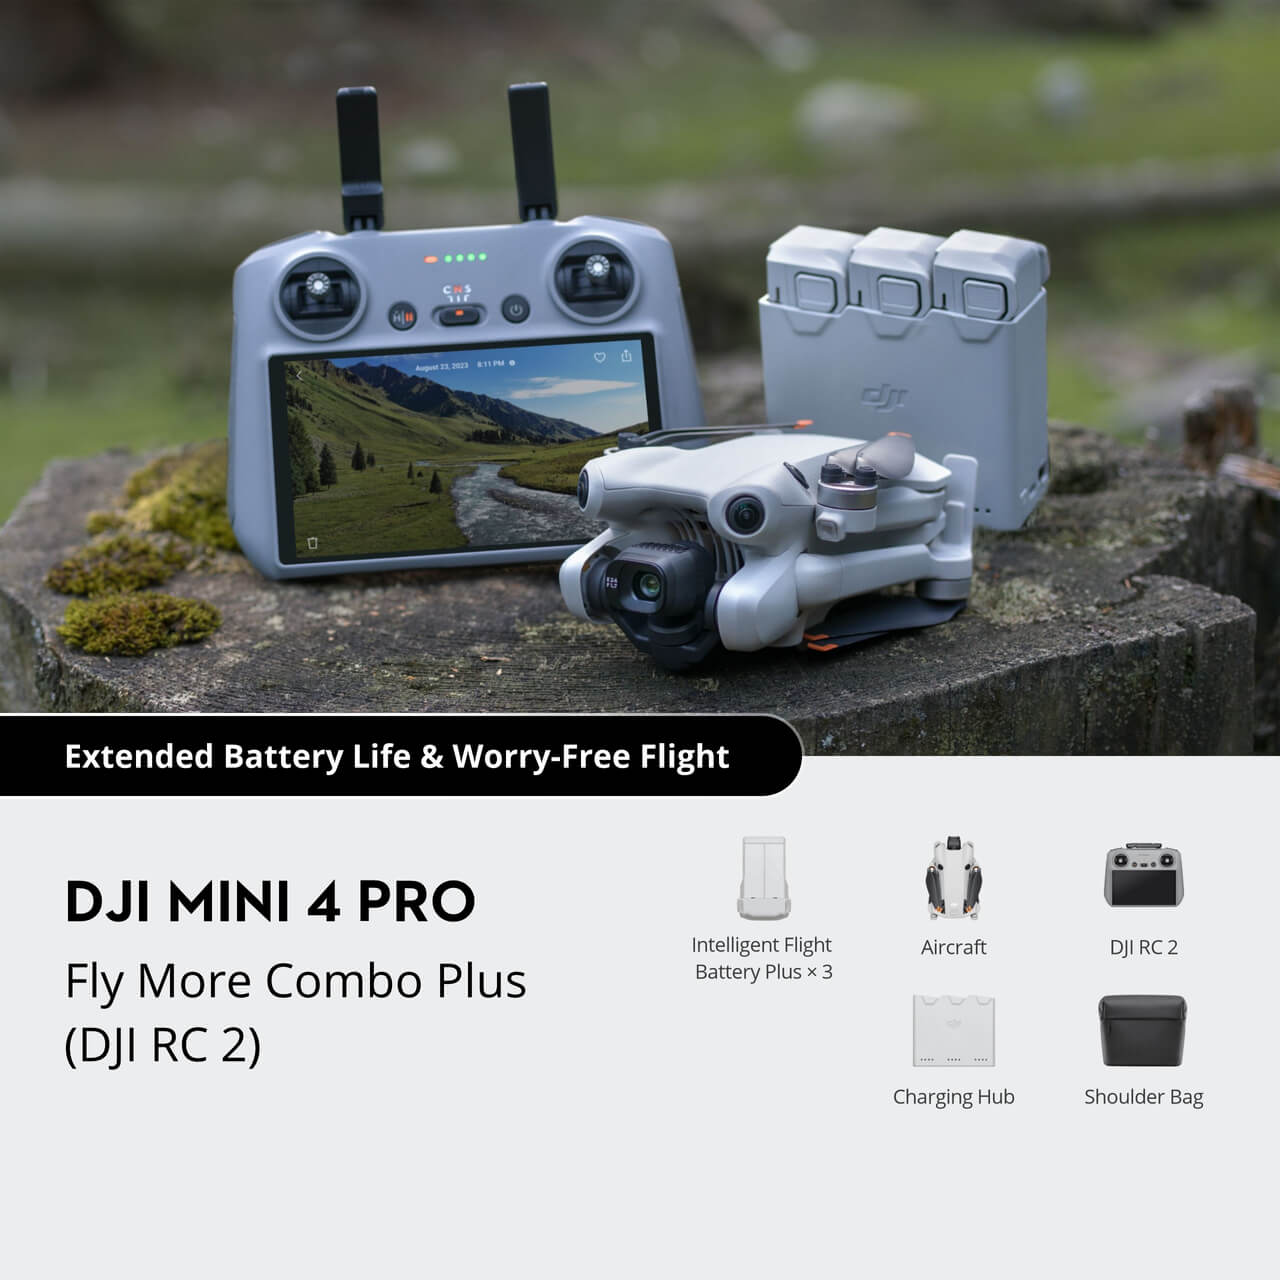 DJI Mini 4 PRO FLY MORE COMBO